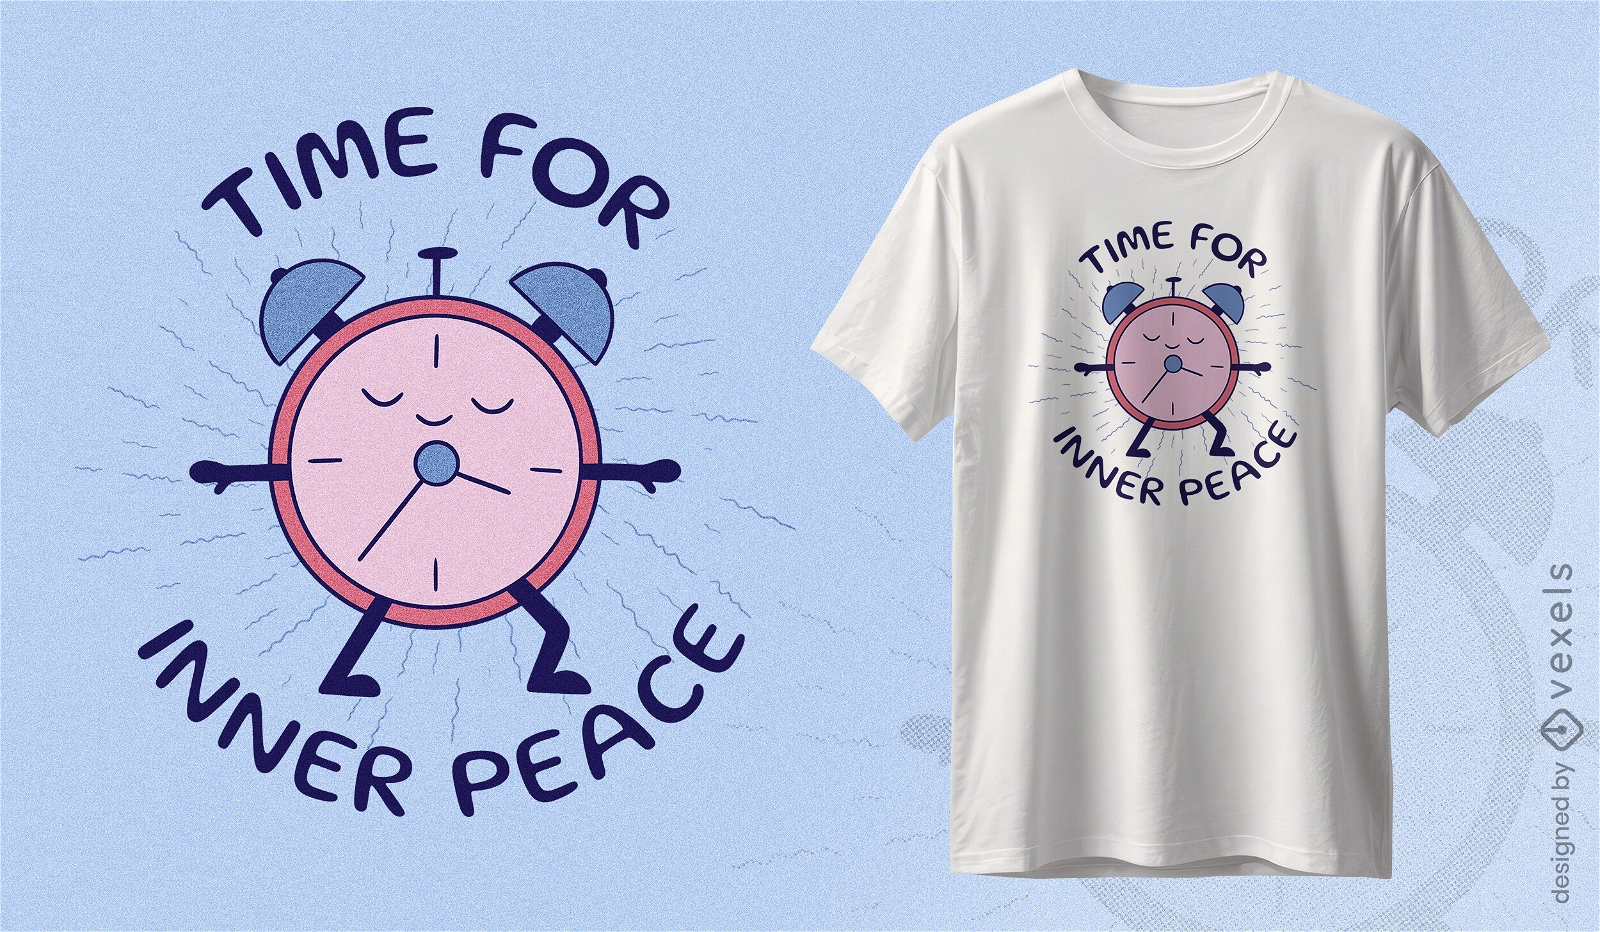 Hora do design de camiseta com rel?gio de paz interior